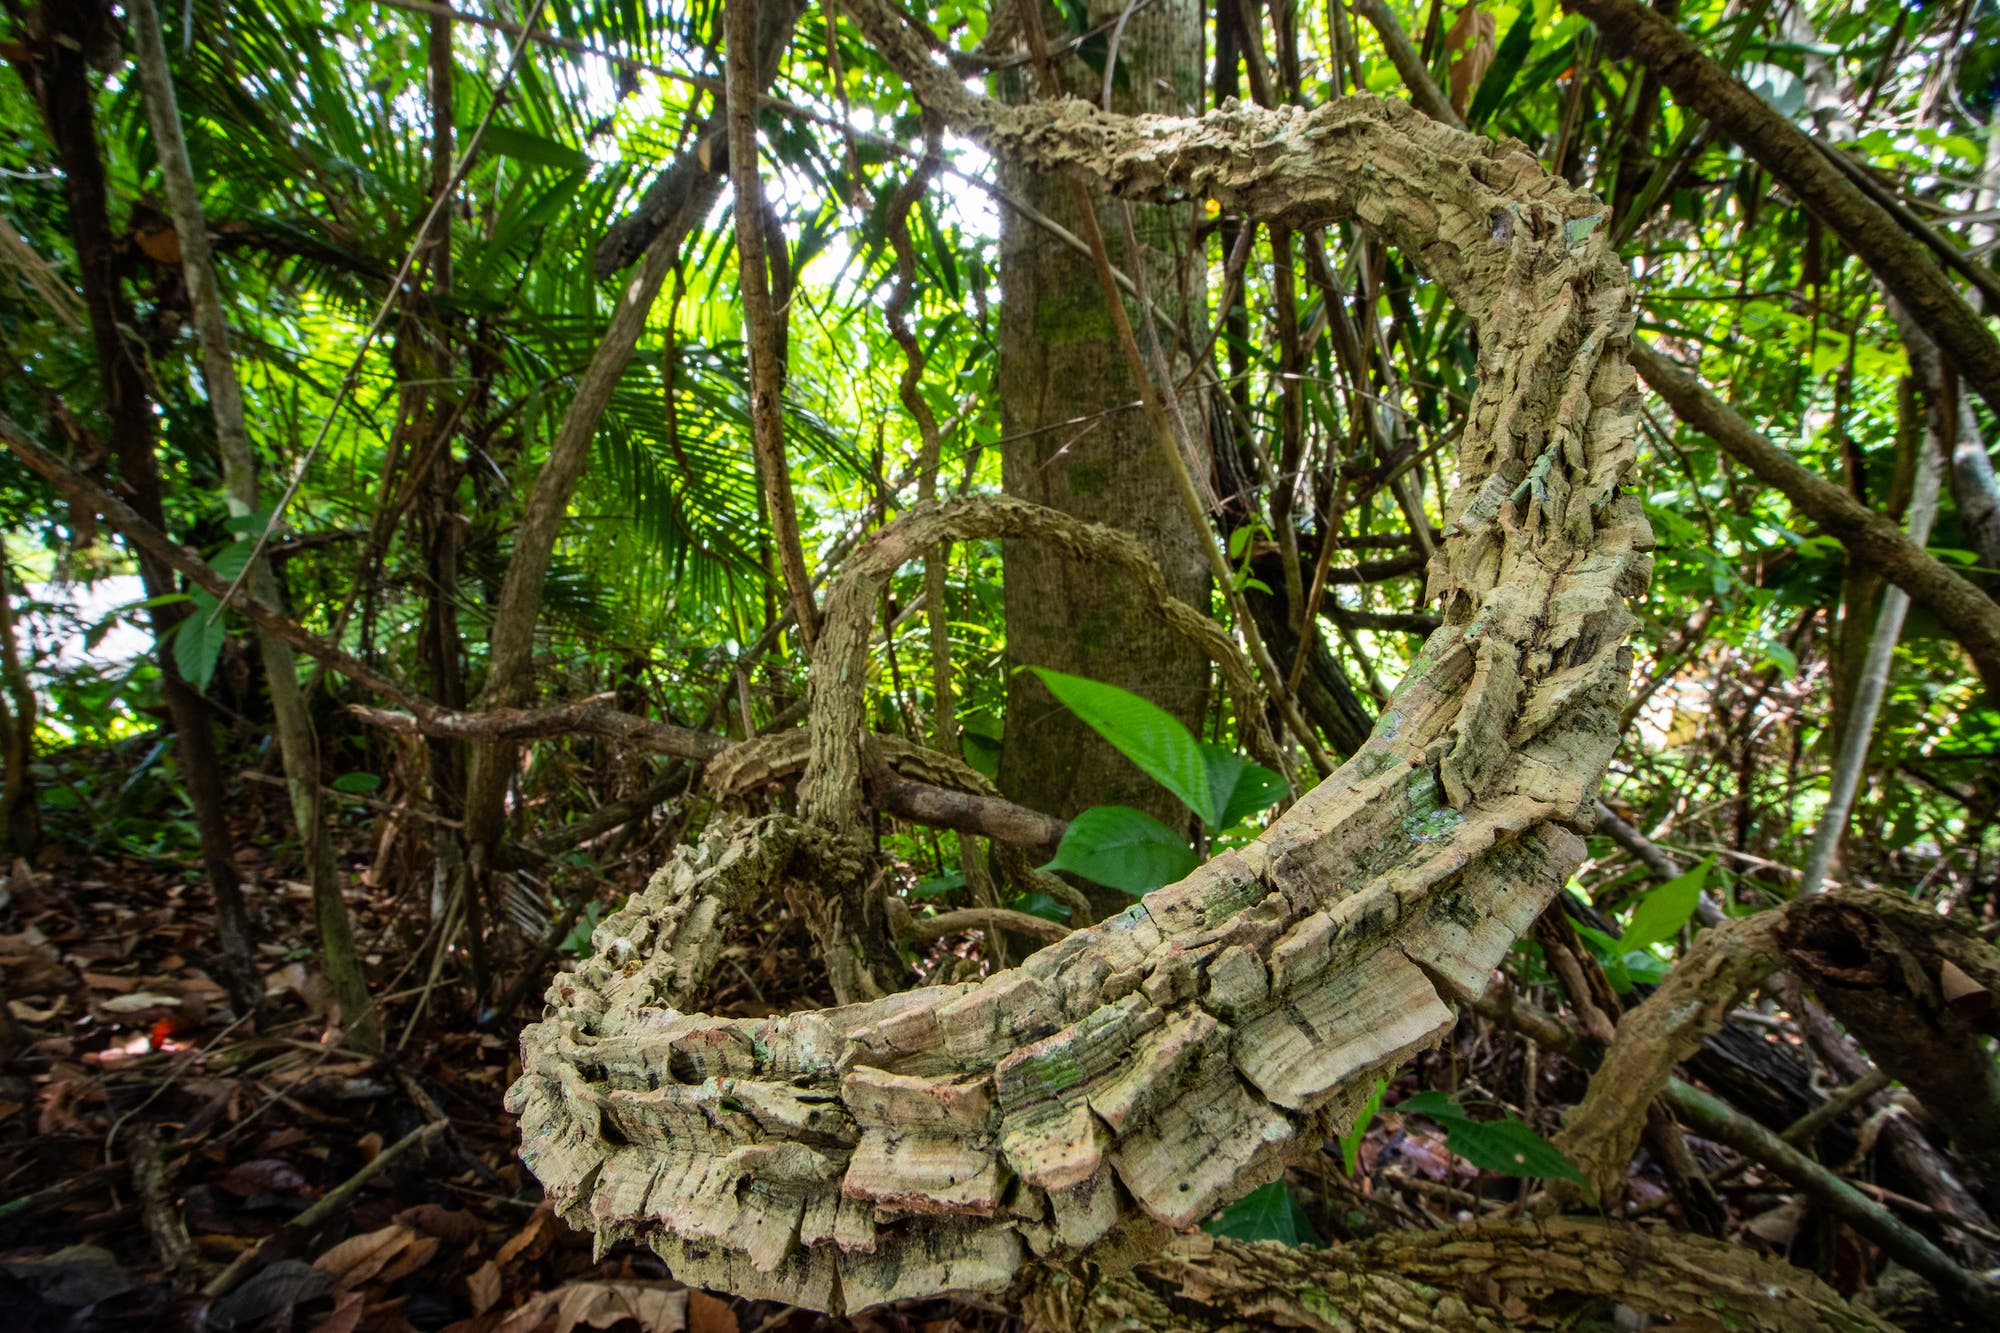 Eine riesige Lianenranke zieht sich durch den Regenwald